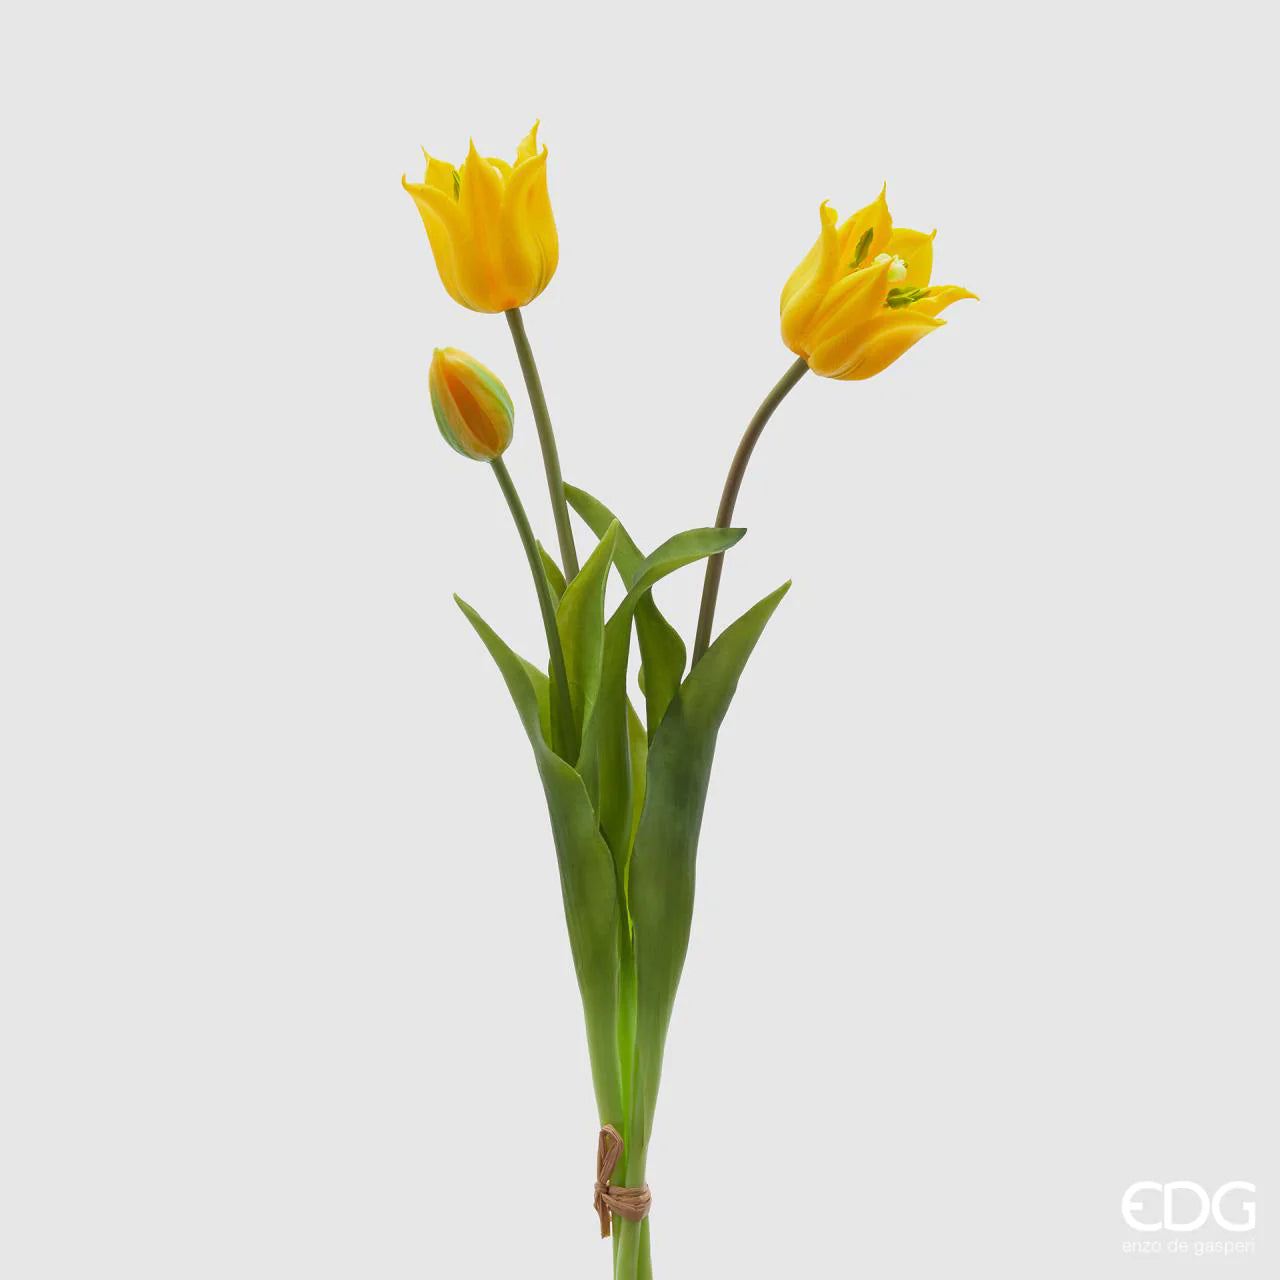 EDG - Mazzo Tulipani Oliz 3 Fiori Yellow